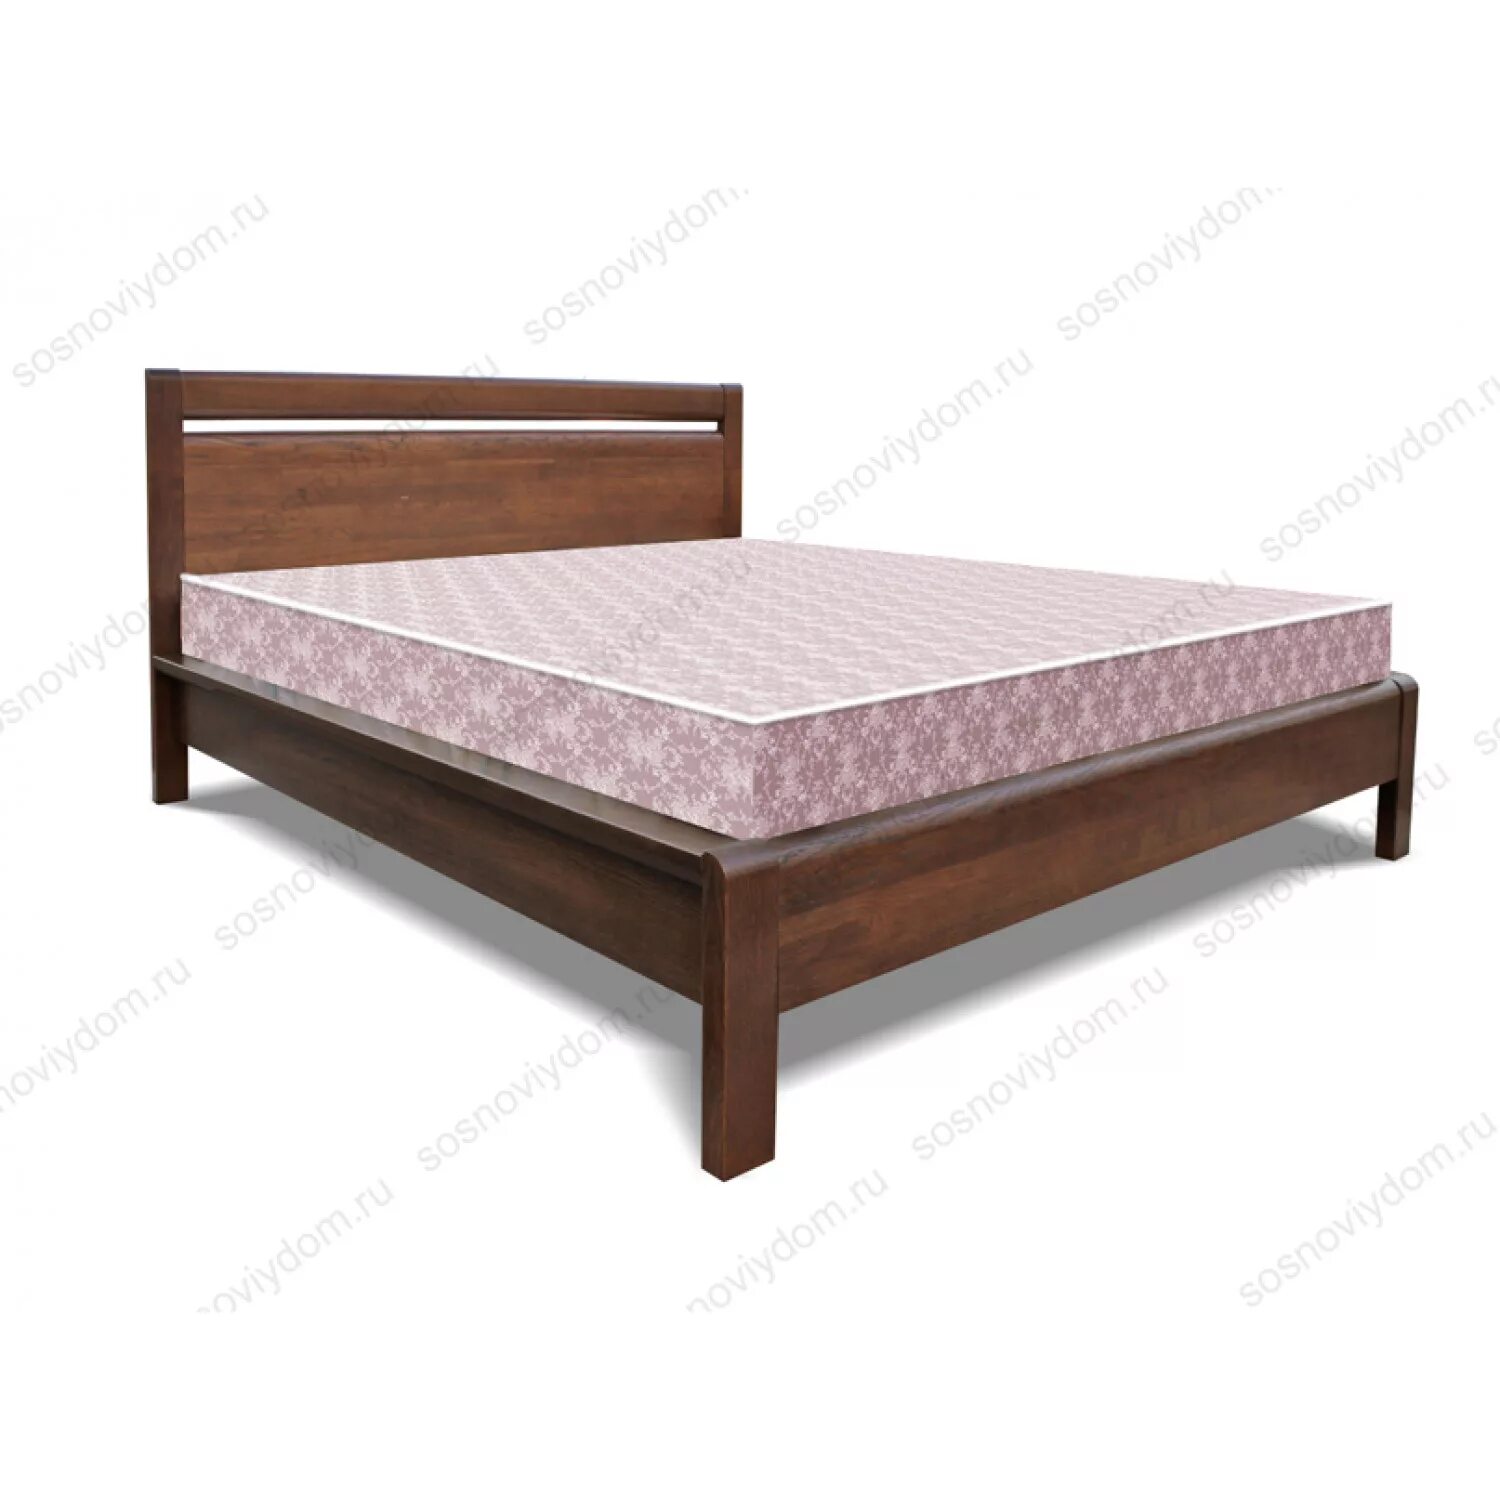 Кровать массив дерева 140х200 лазурит. Рамона кровать АСМ. Кровать из массива дуба Бриджит 140х200.